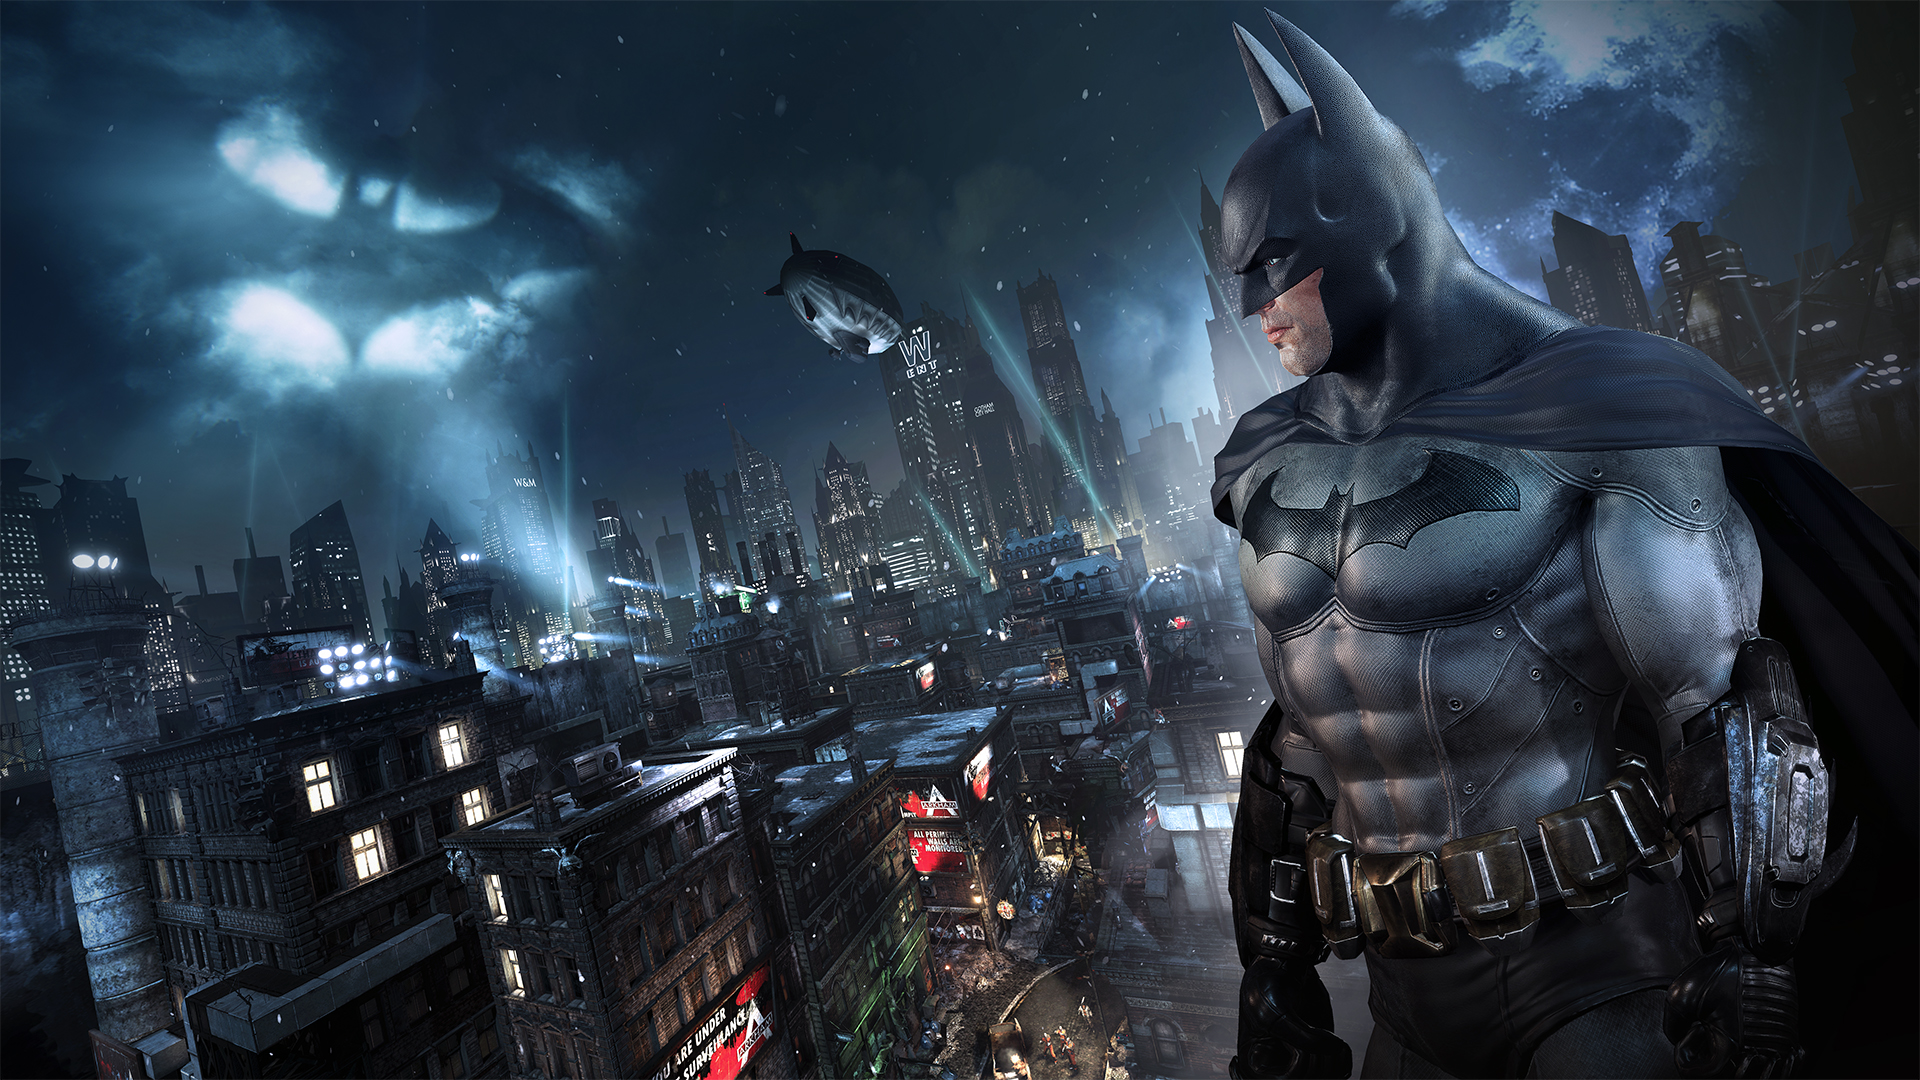 Batman: Return to Arkham se lanzará finalmente el 18 de octubre | Vídeo comparativo PS3 vs PS4